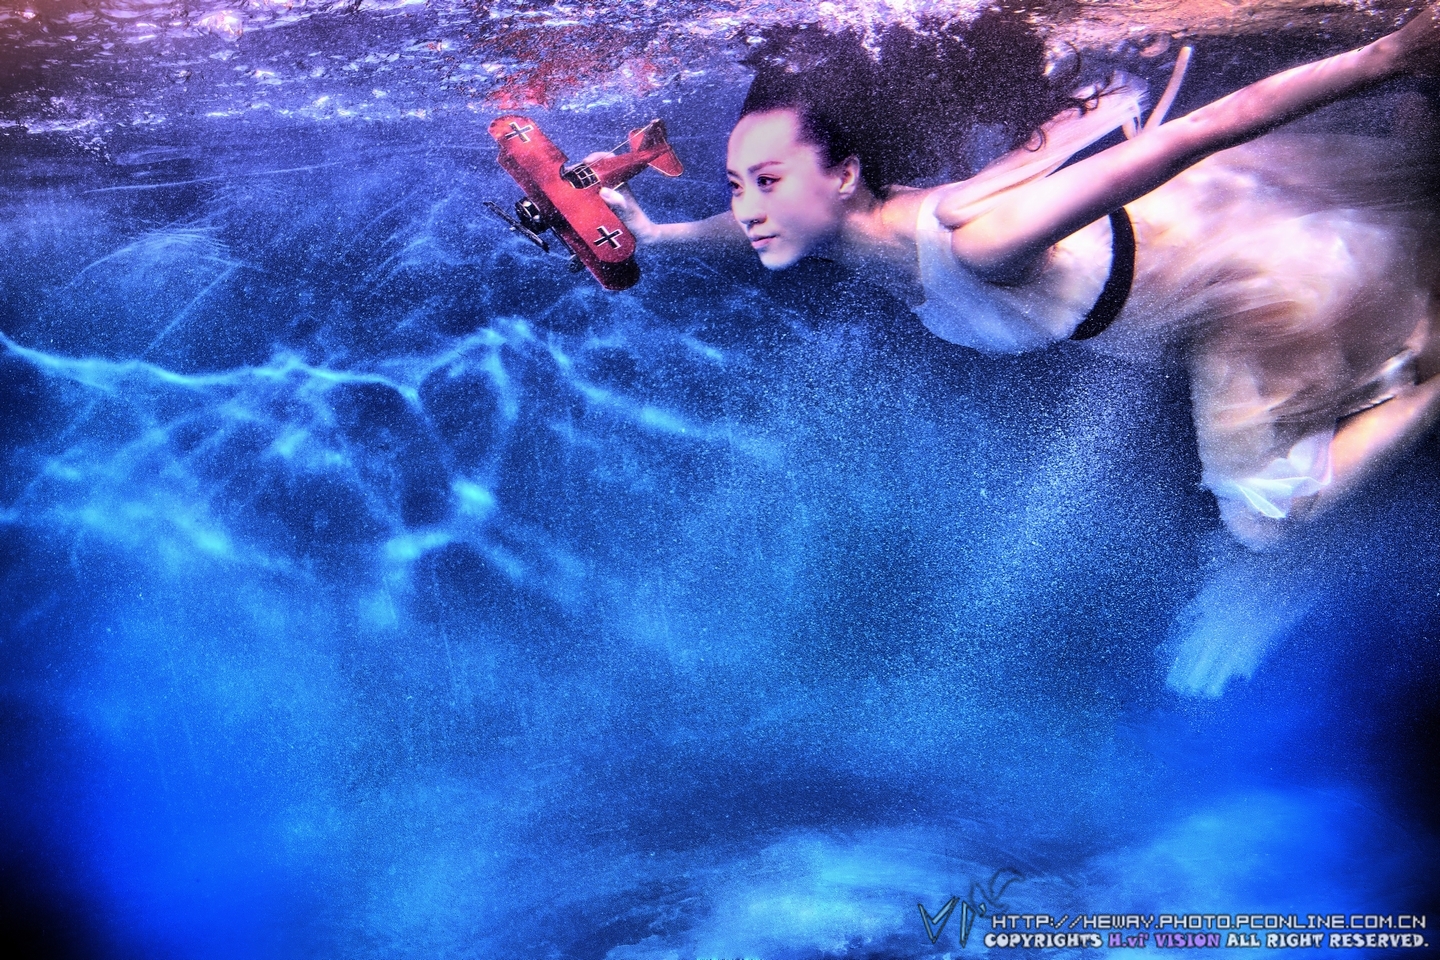 潜水的女人水下摄影 - 免费可商用图片 - CC0素材网